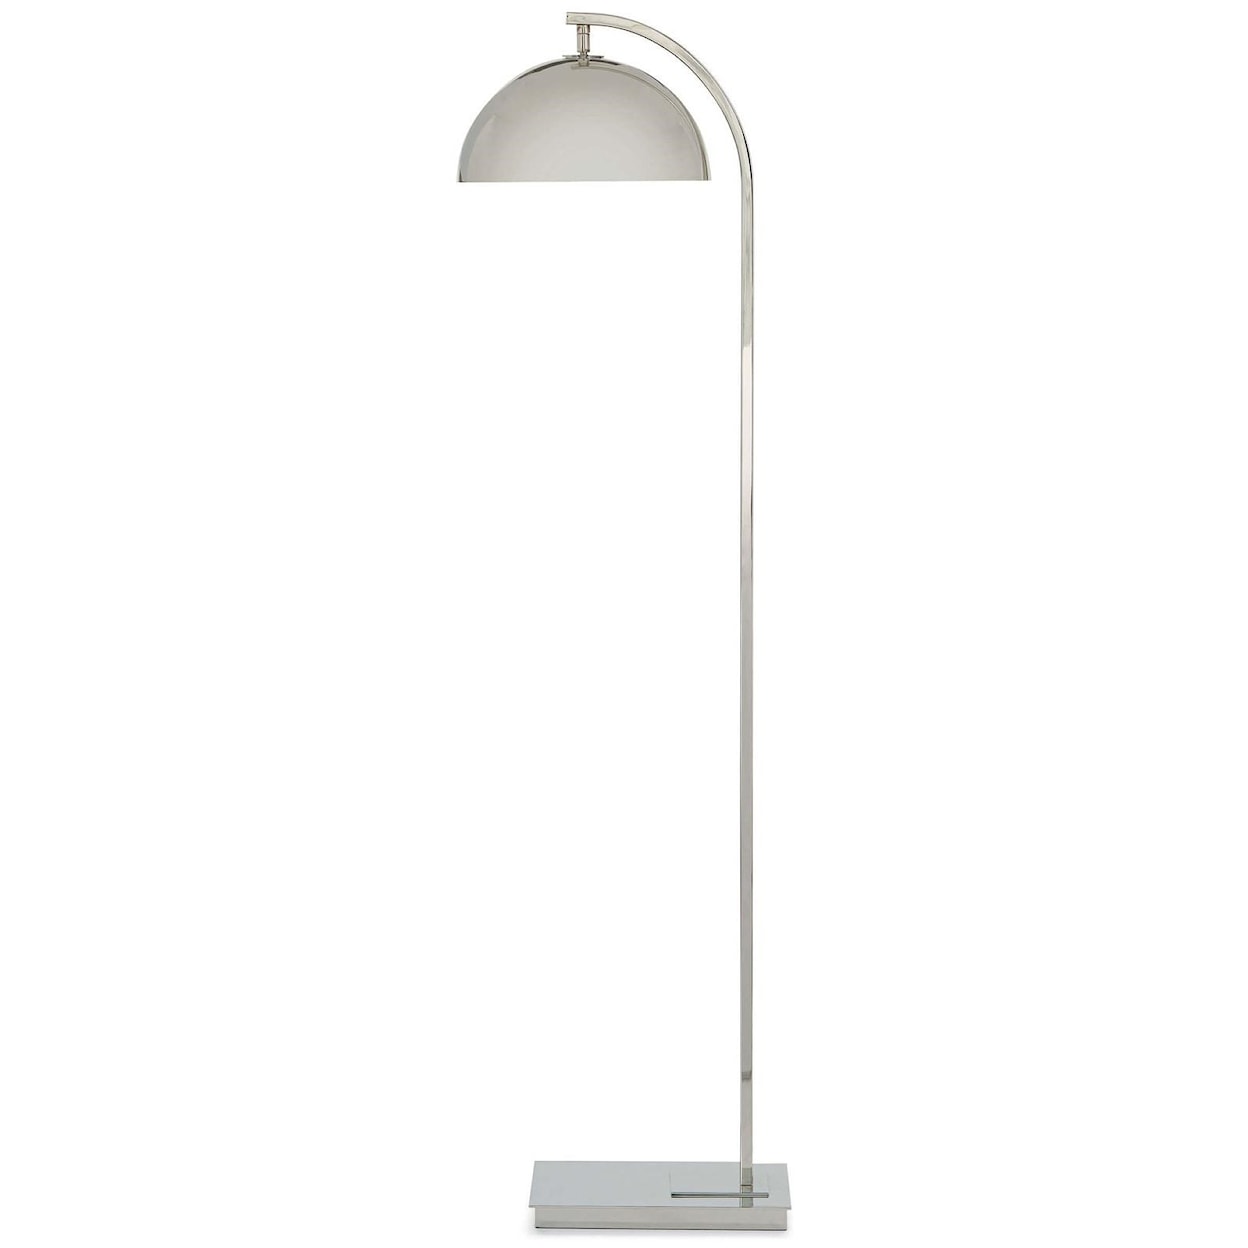 Regina-Andrew Design Floor Lamps Otto Floor Lamp